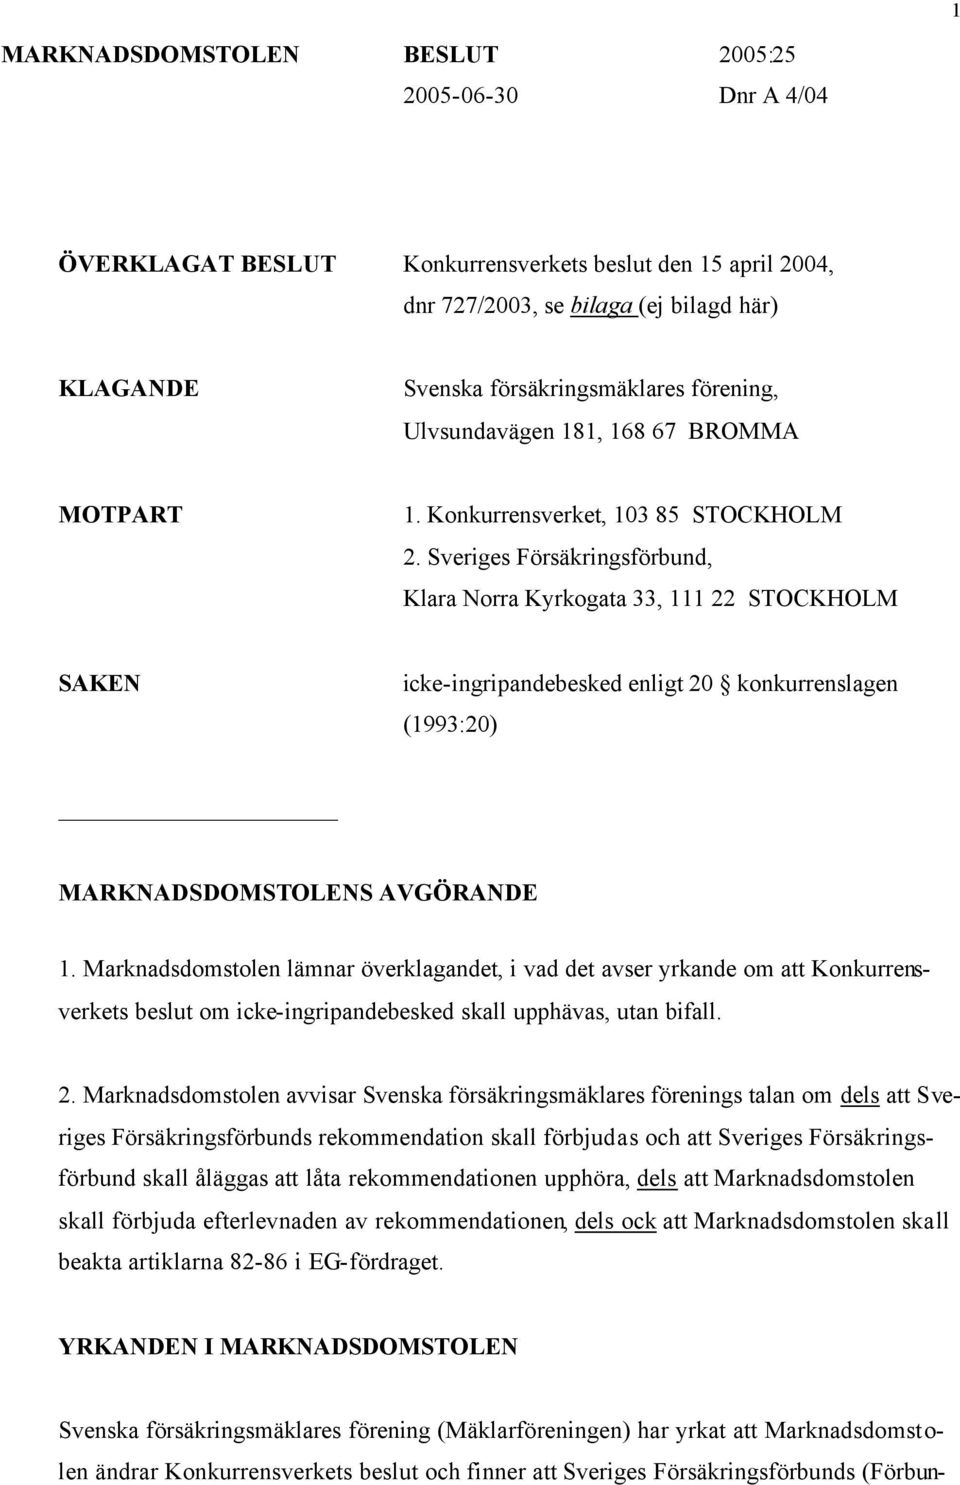 Sveriges Försäkringsförbund, Klara Norra Kyrkogata 33, 111 22 STOCKHOLM SAKEN icke-ingripandebesked enligt 20 konkurrenslagen (1993:20) MARKNADSDOMSTOLENS AVGÖRANDE 1.